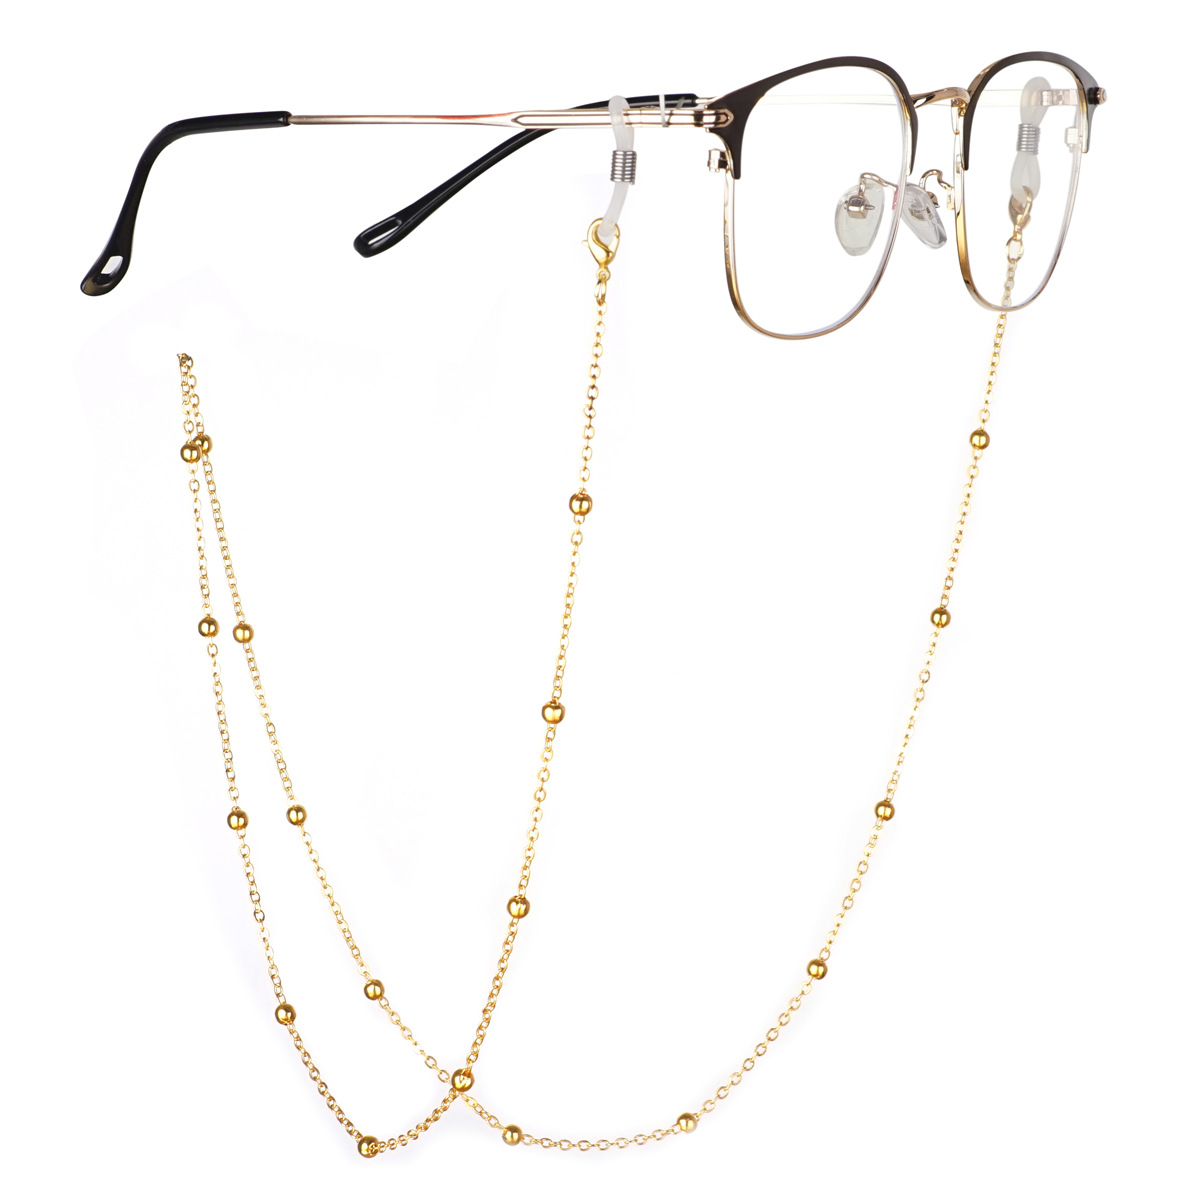 Glasses Chain Glasses Holders Sunglasses Cords Eyewear Lanyards Sunglasses  Chain Mask Holder Chains for Masks Reading Glasses 